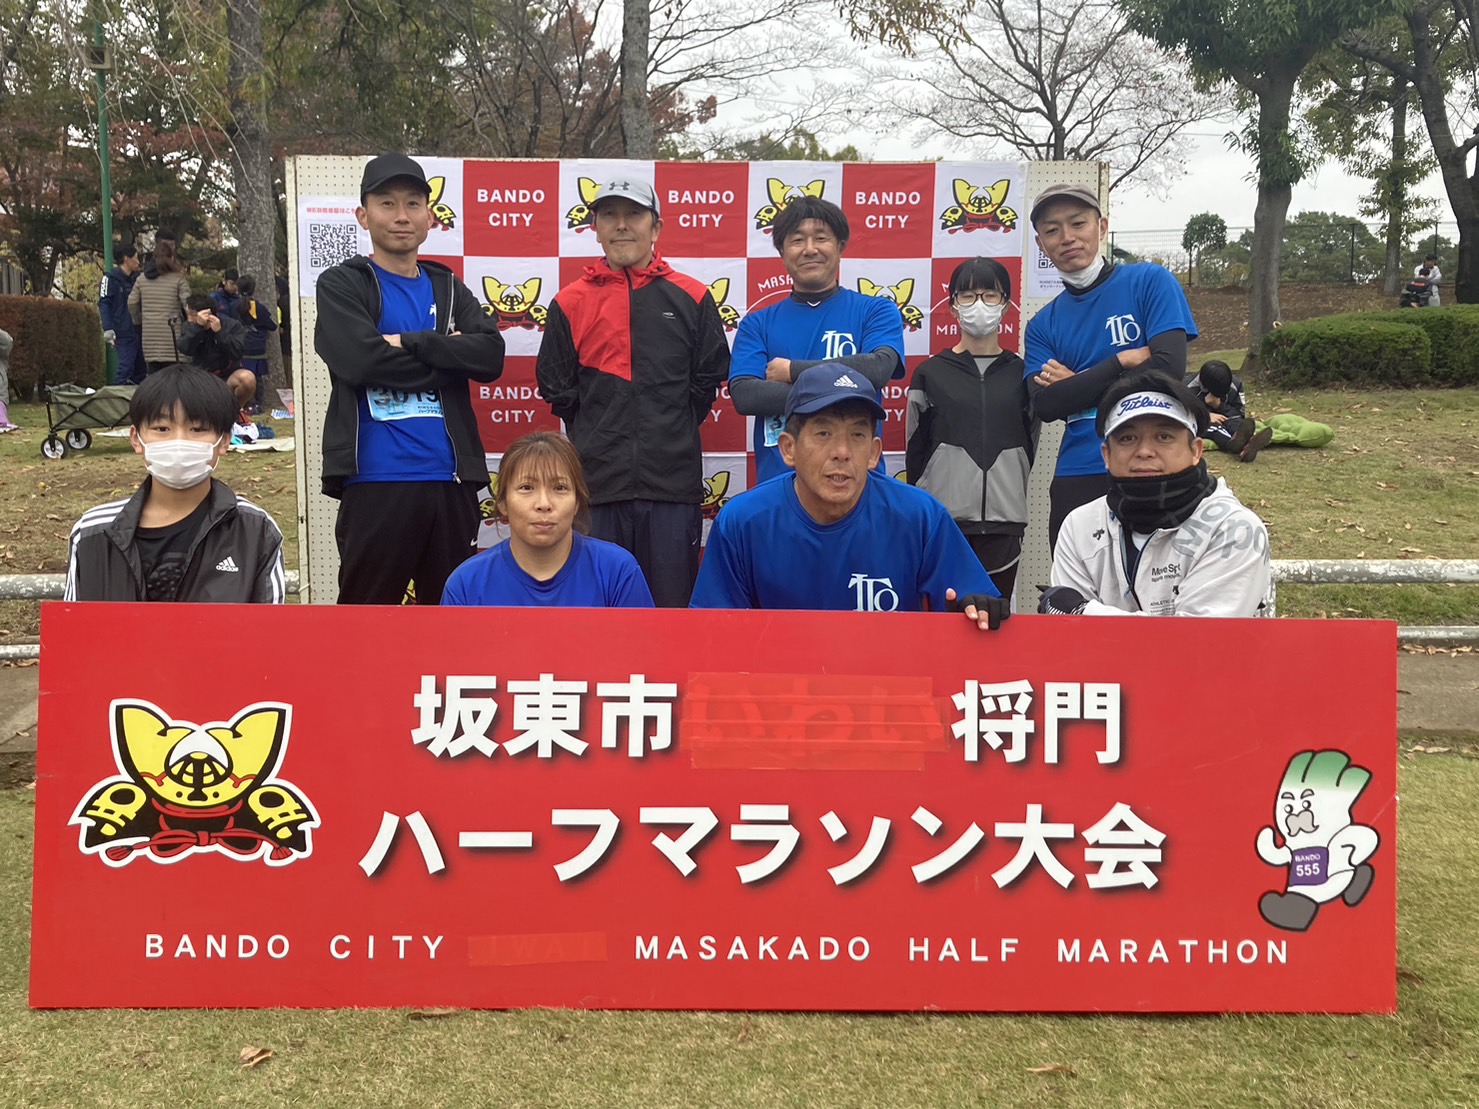 ITOランニングチームVol.13 坂東市将門マラソン大会に参加。